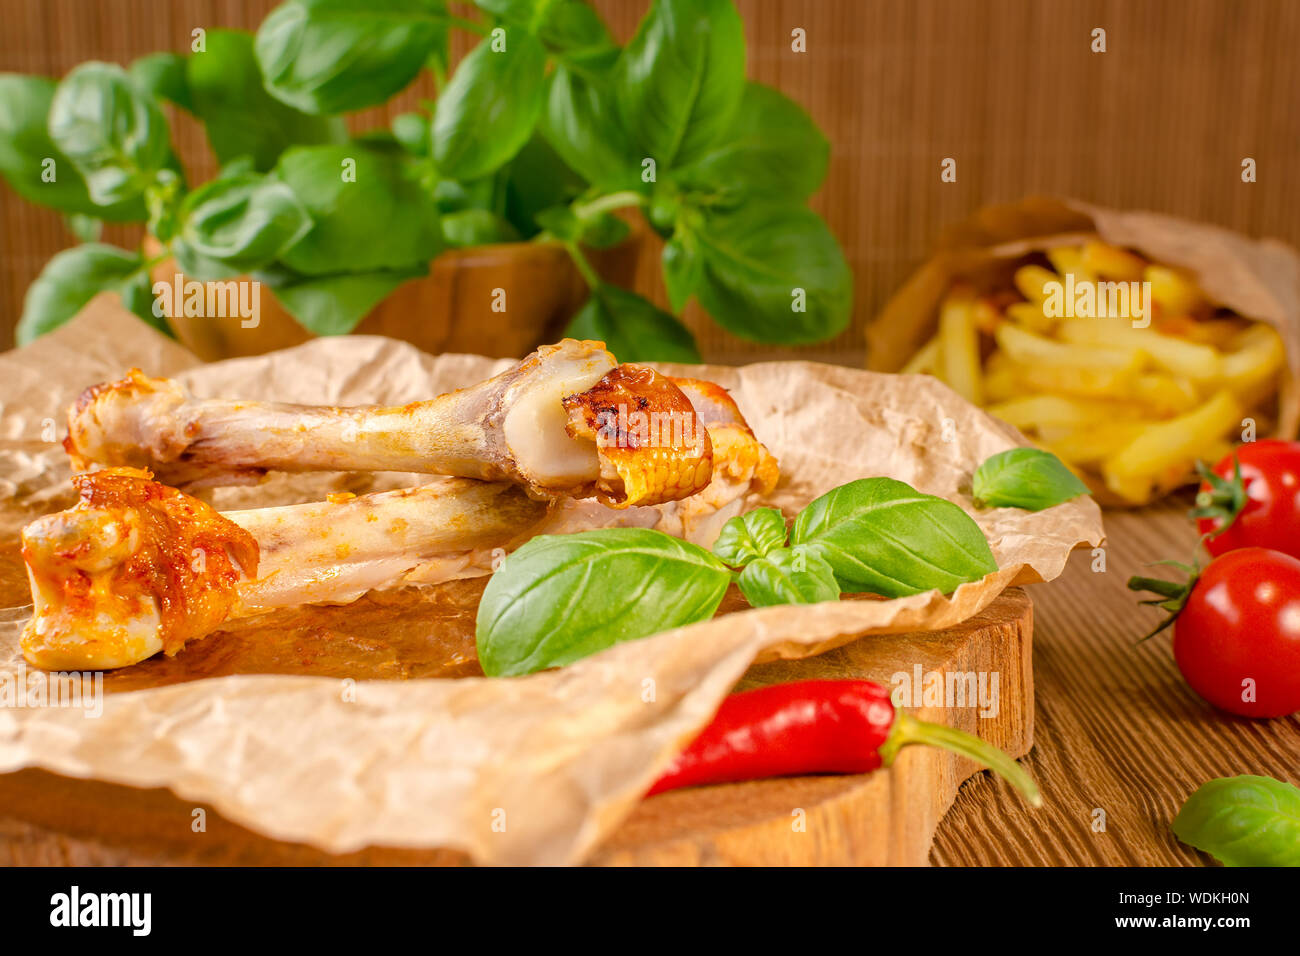 Les restes de nourriture et de chili au poulet grillé avec sauce tomate, frites et basilic sur fond de bois Banque D'Images